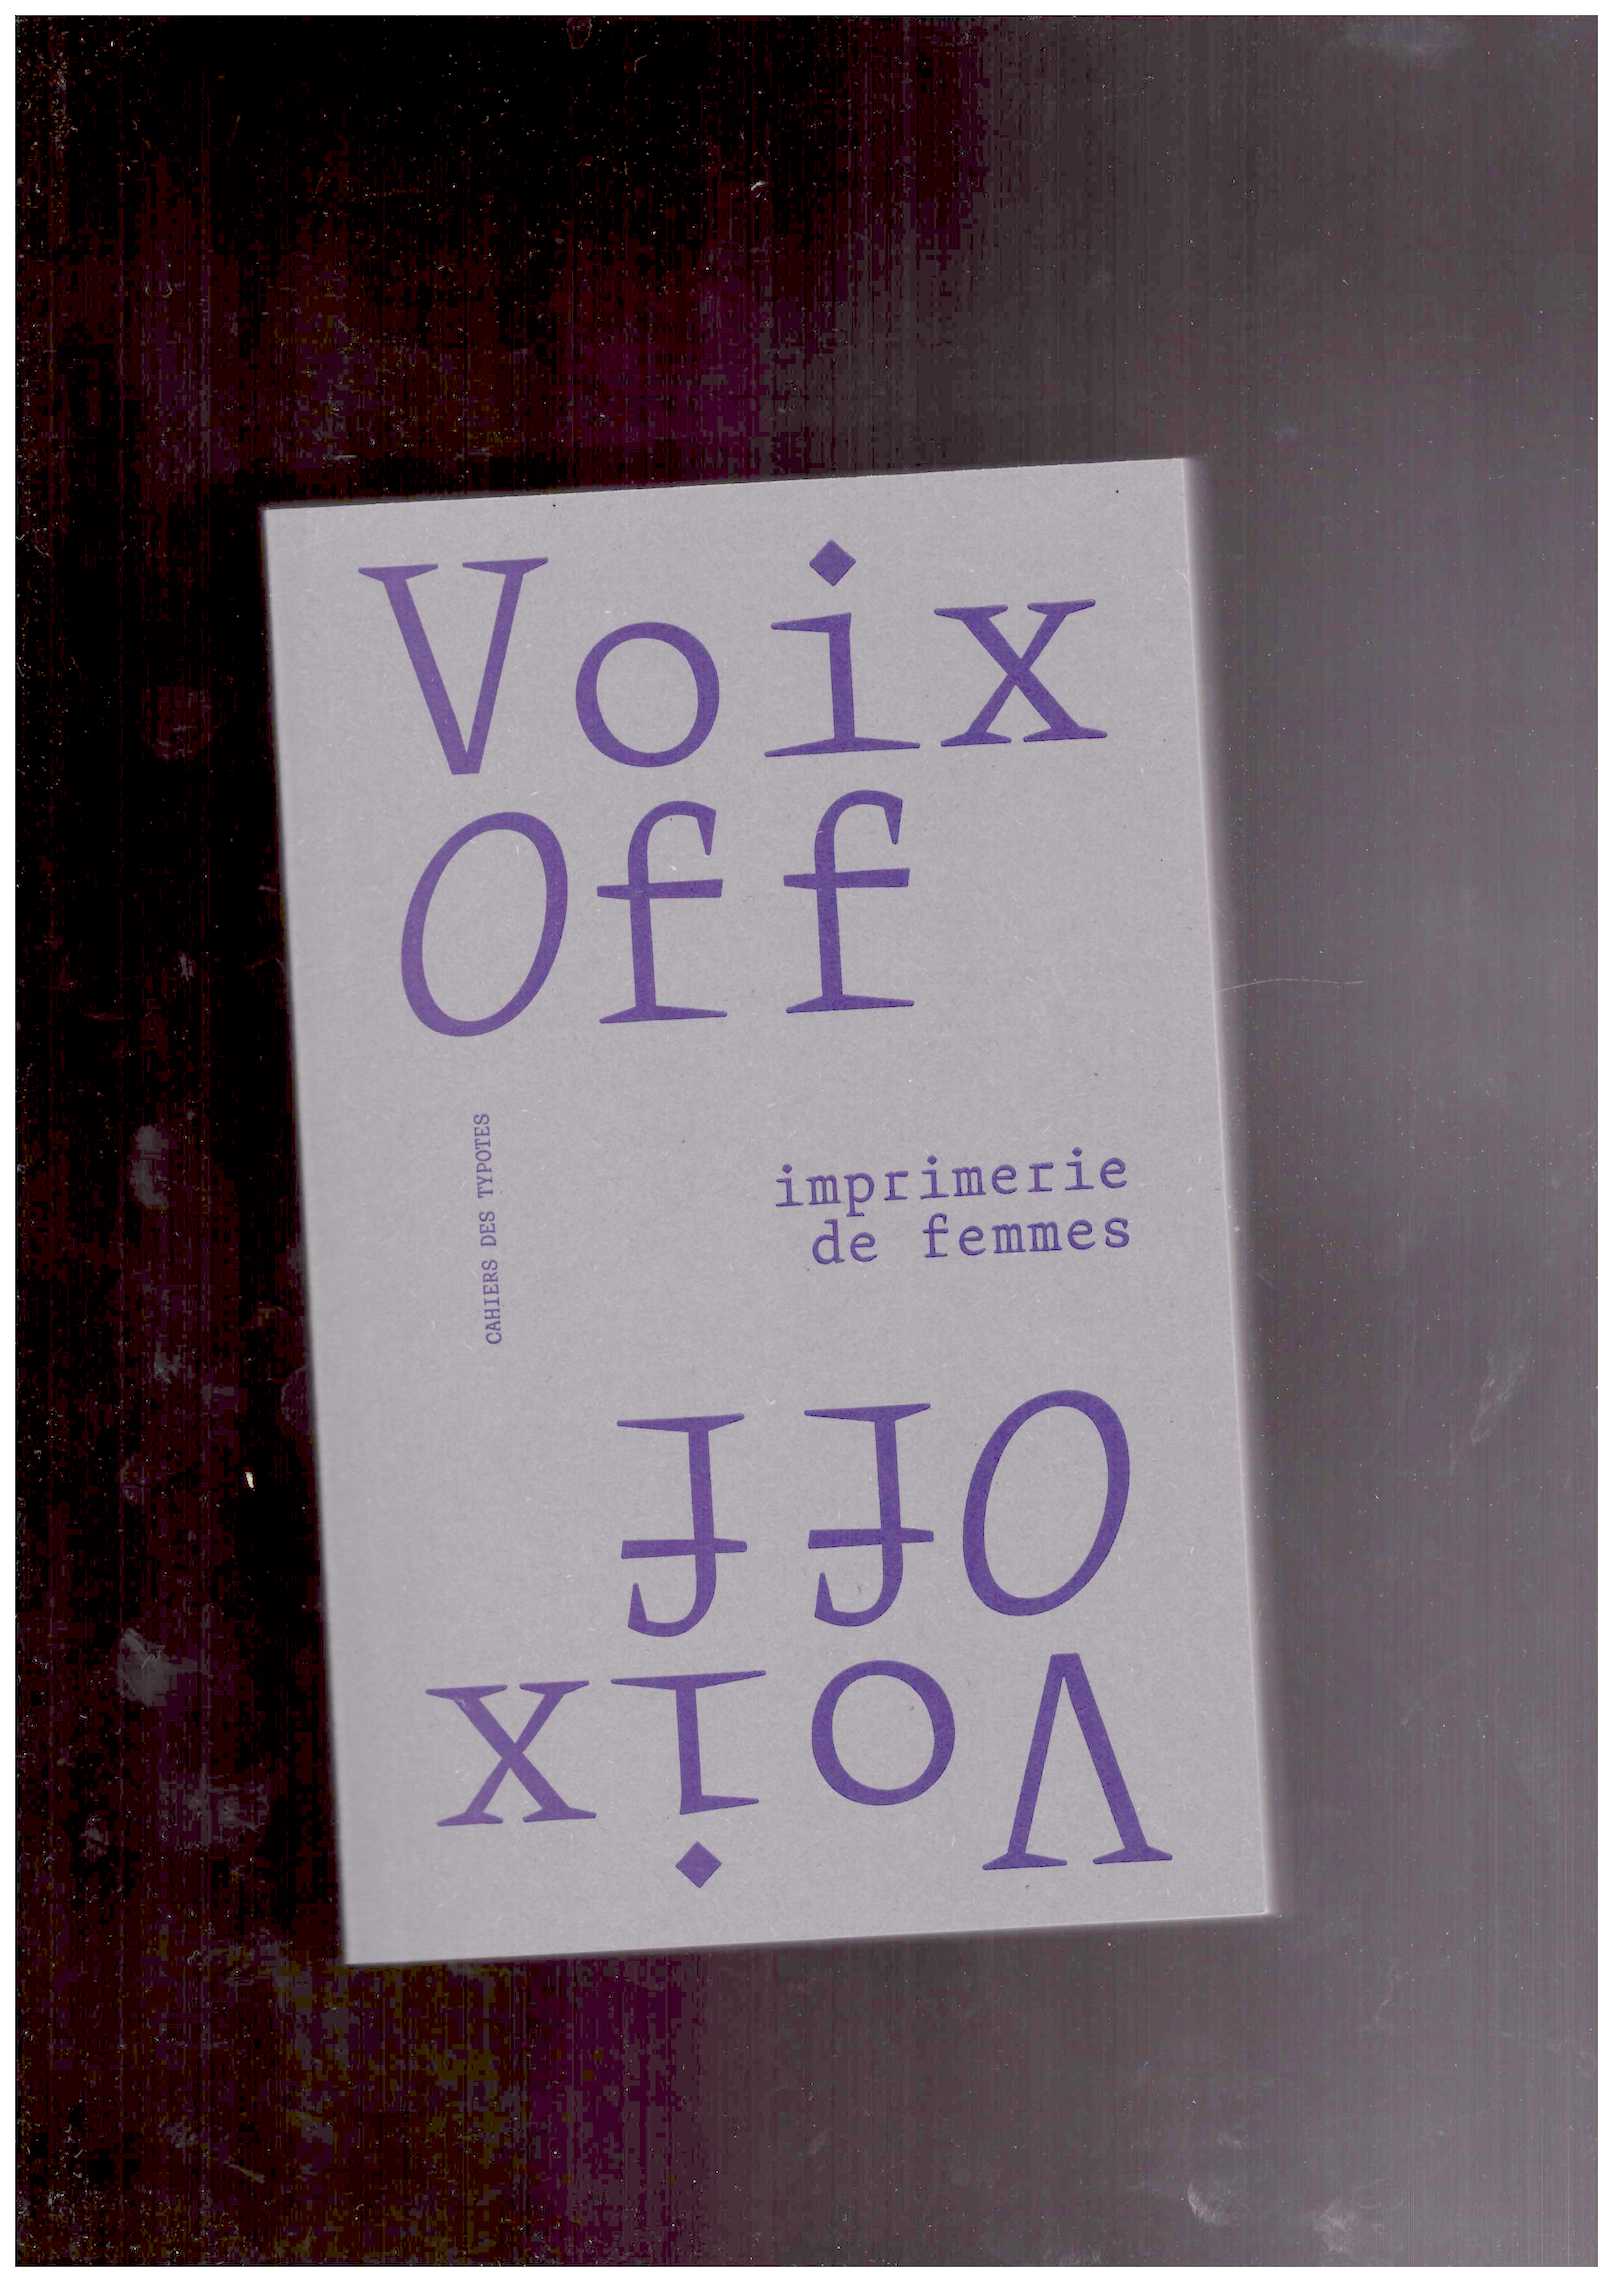 PAEZ PASSAQUIN, Natalia; MYON, Fanny (eds.) - Voix Off : imprimerie de femmes